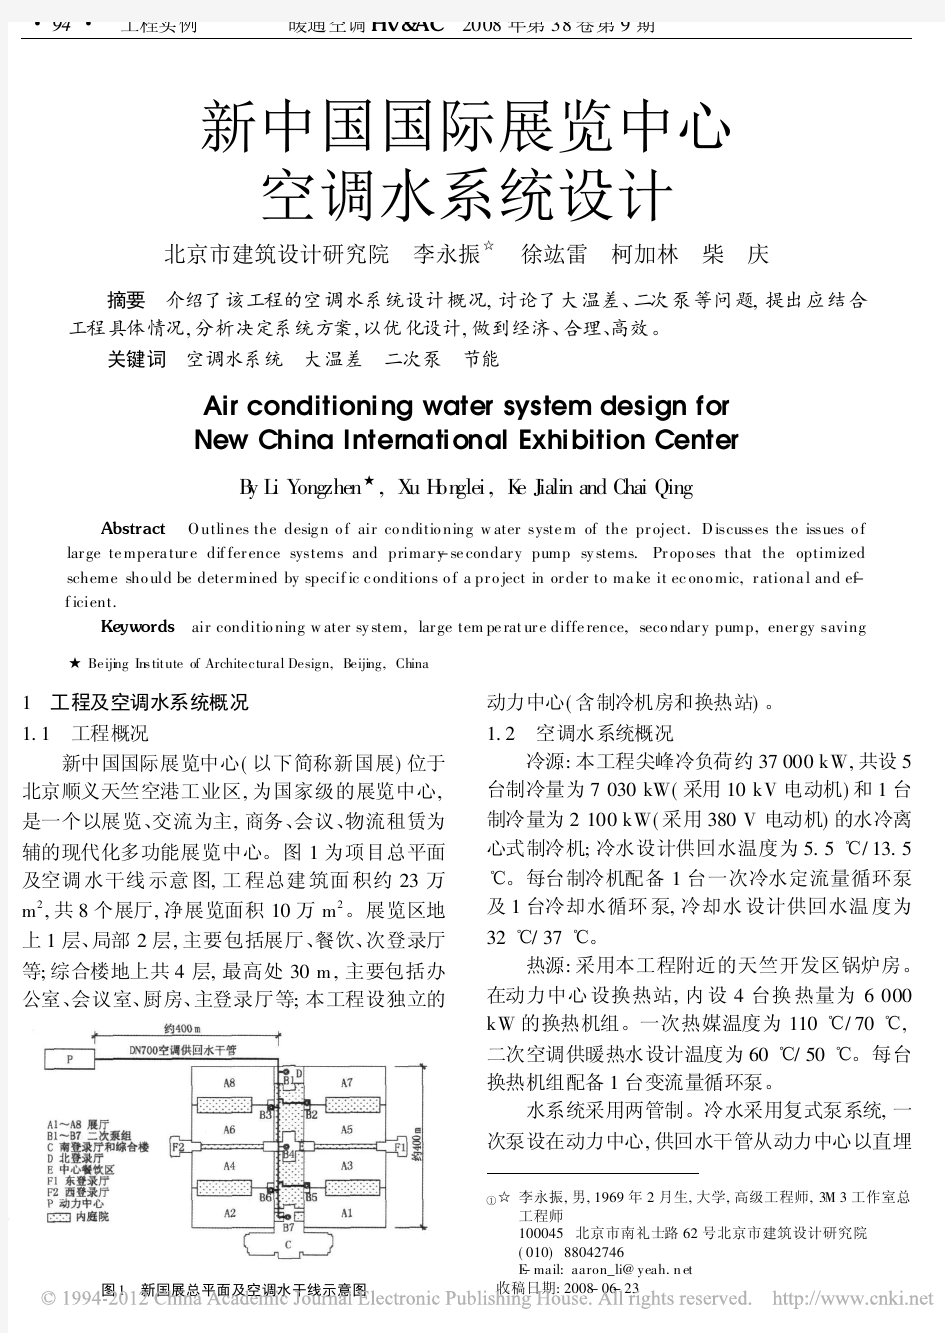 新中国国际展览中心空调水系统设计